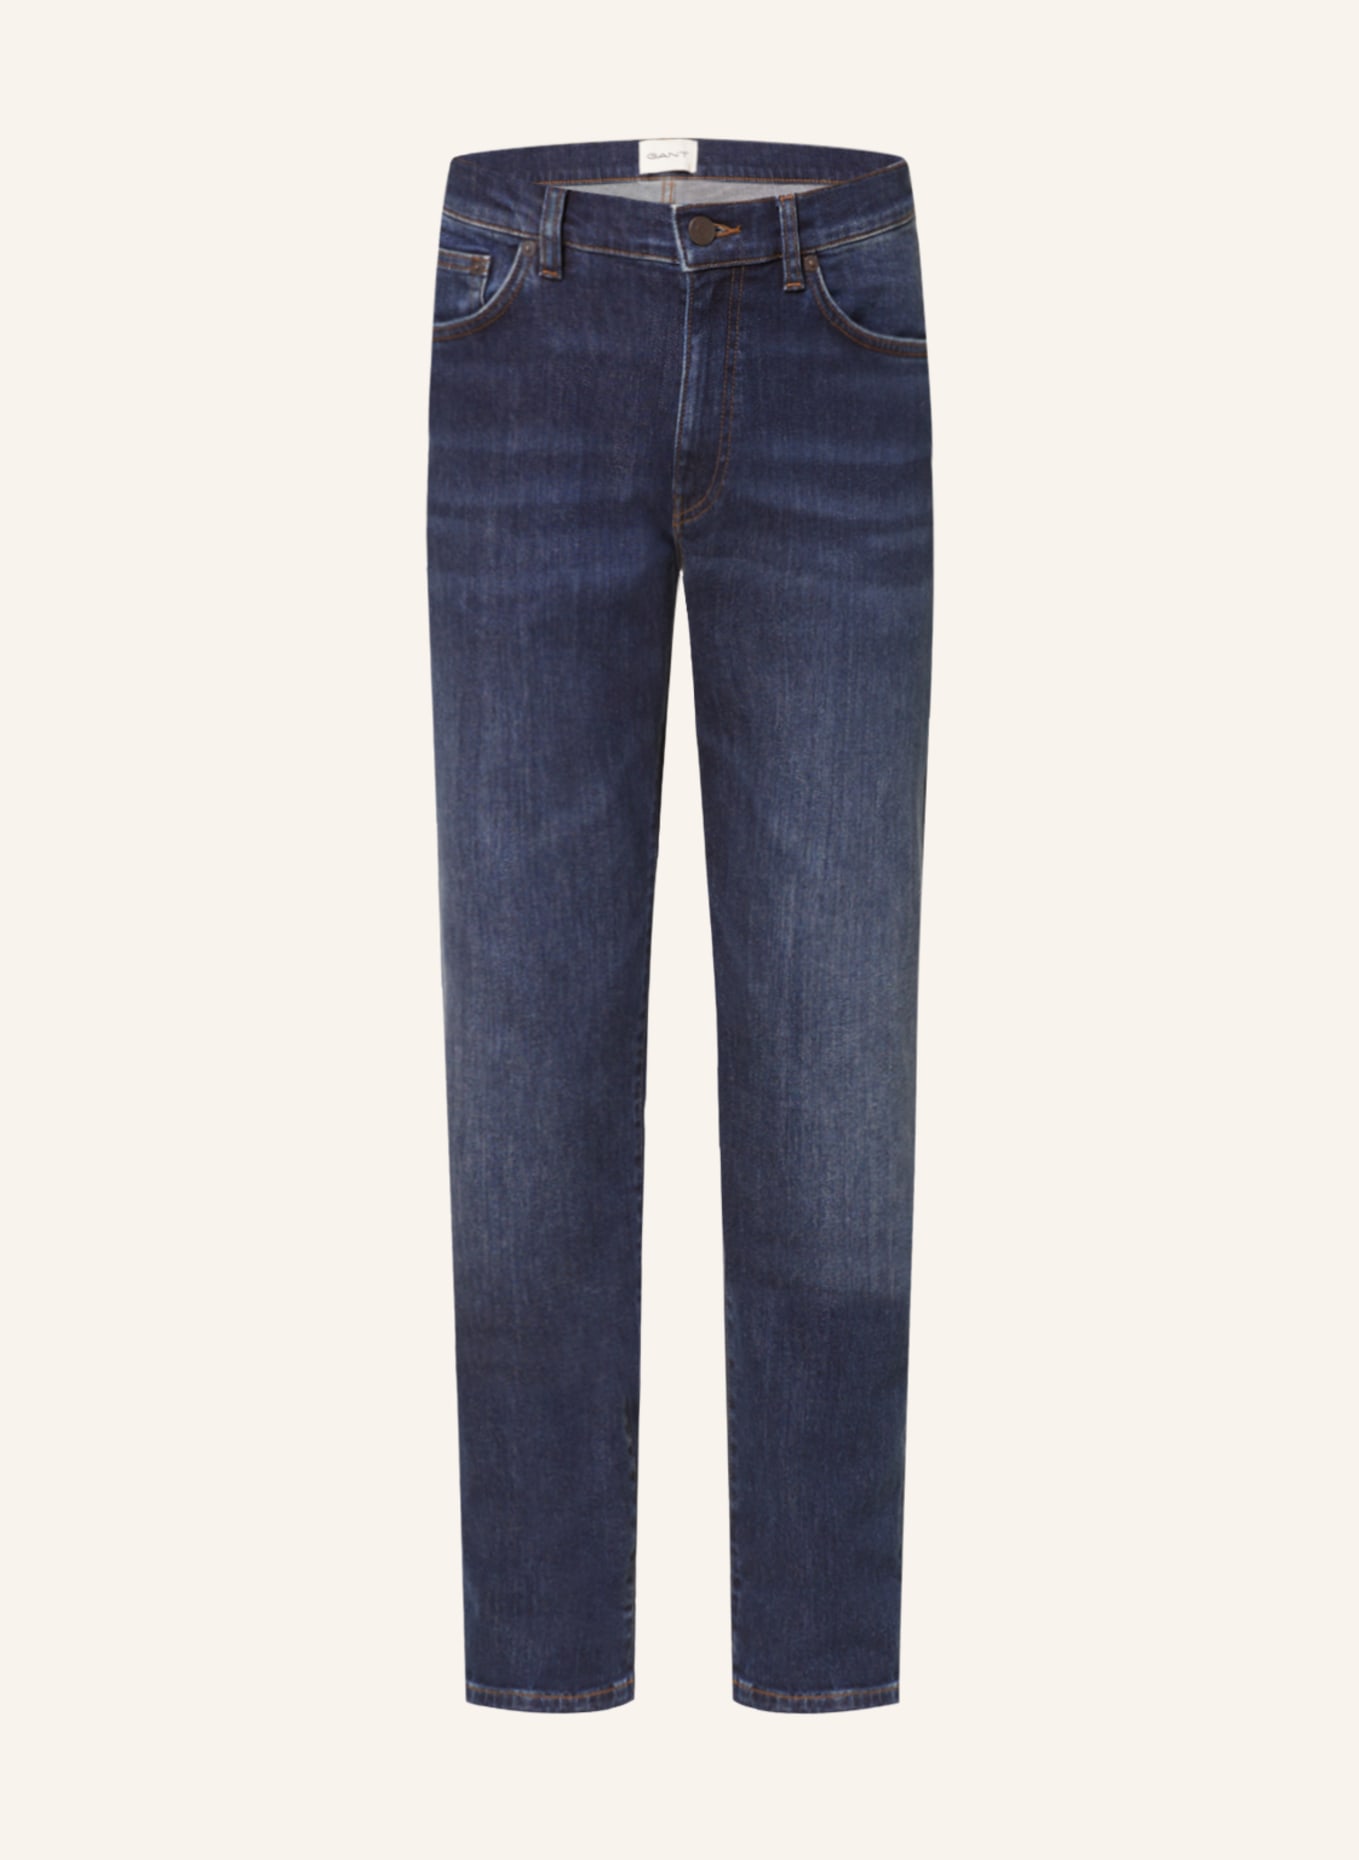 GANT Jeans Slim Fit, Farbe: 961 Dark Blue Worn In (Bild 1)